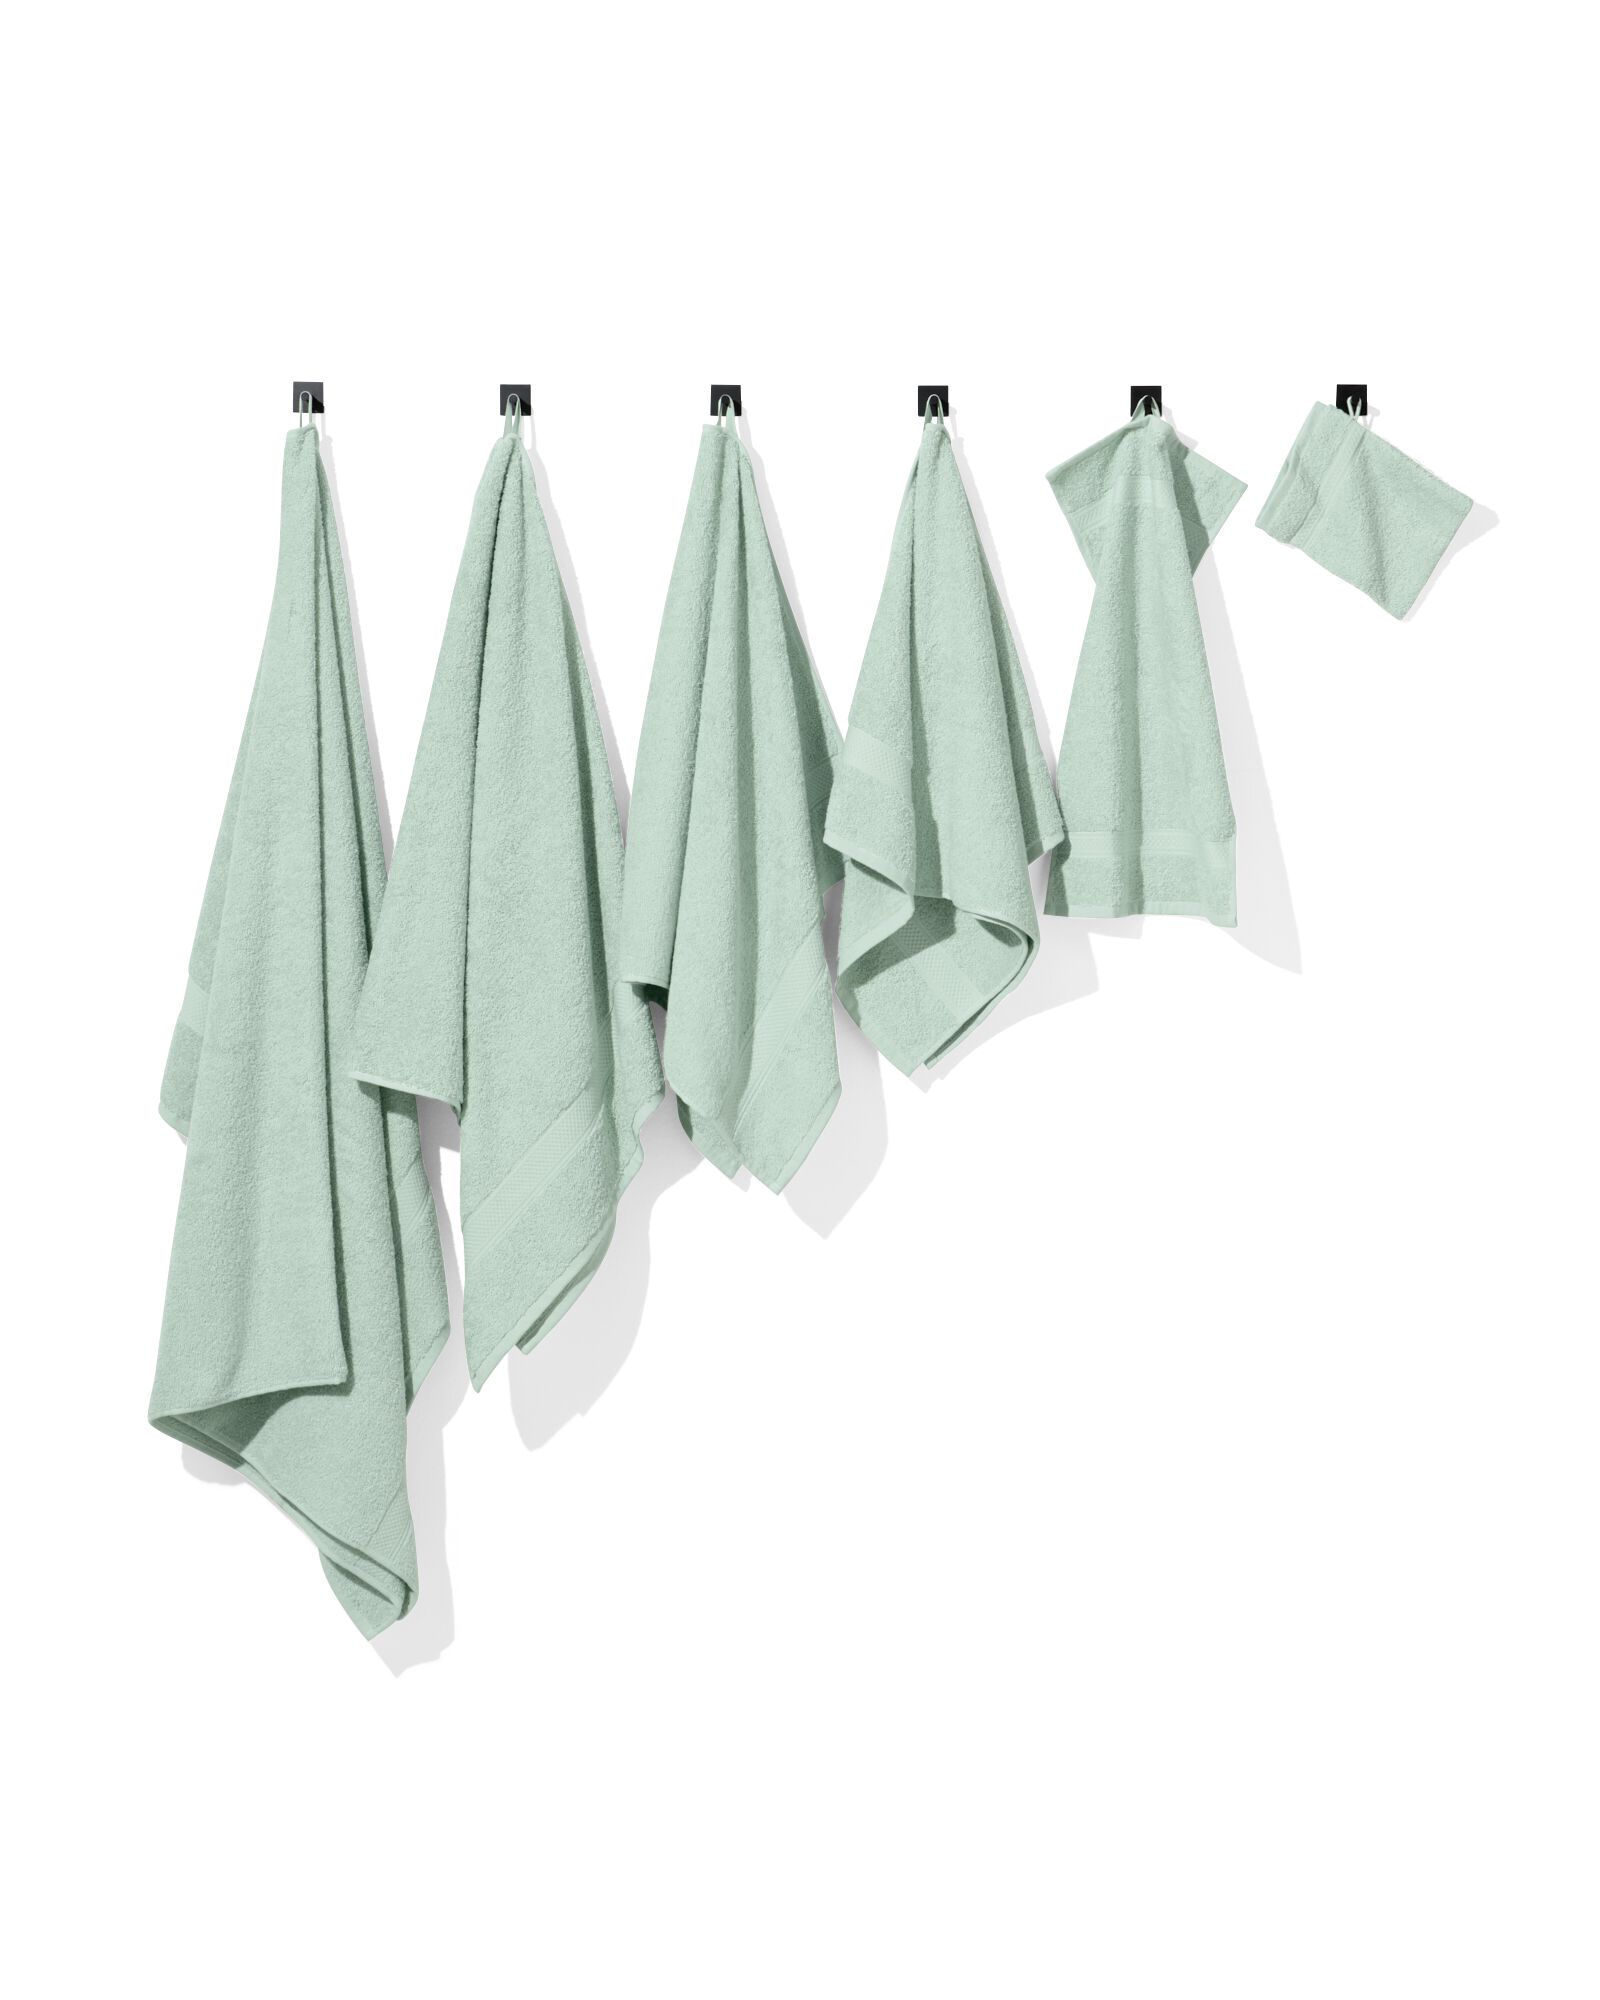 handdoek 100x150 zware kwaliteit poedergroen lichtgroen handdoek 100 x 150 - 5230077 - HEMA